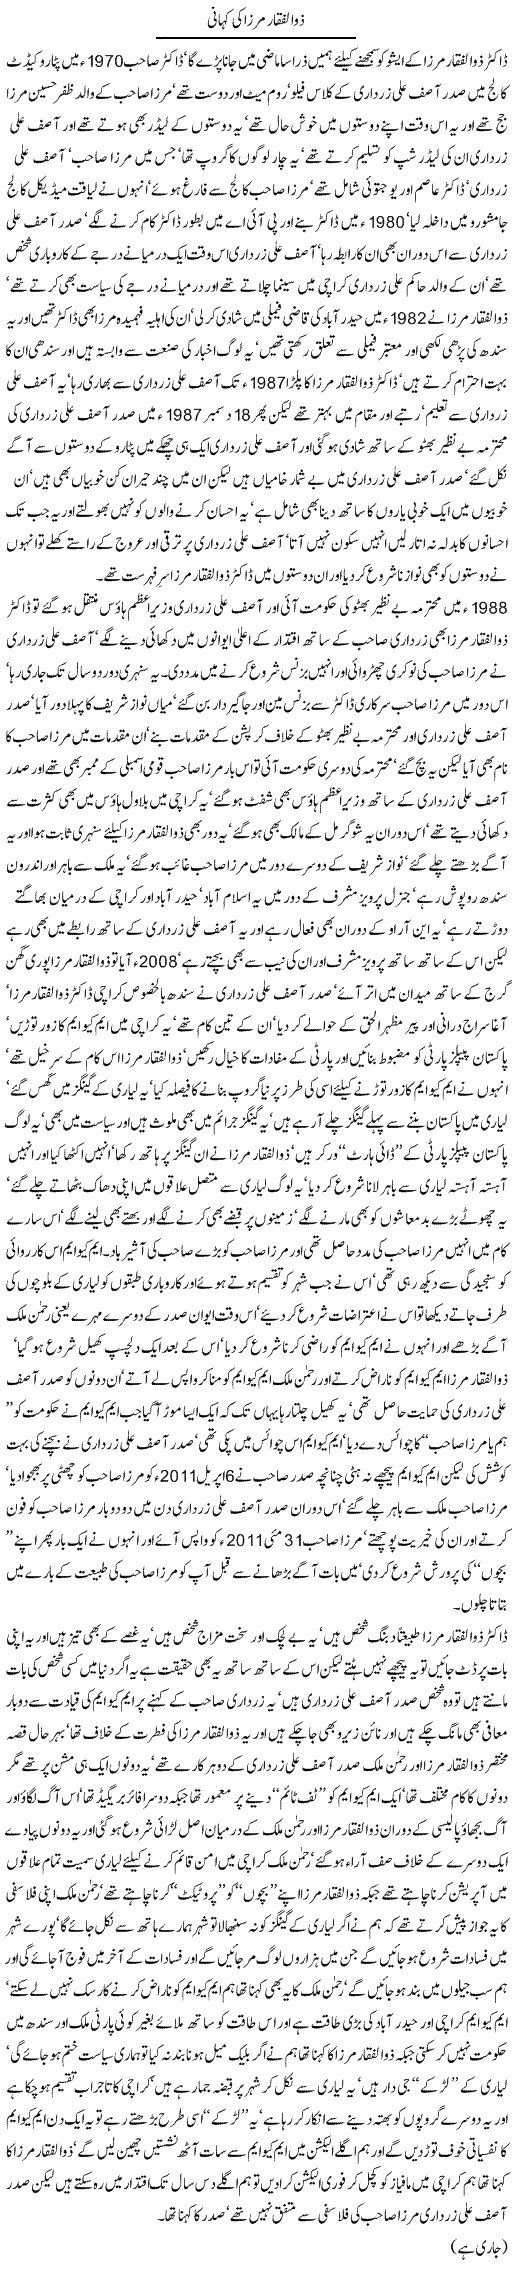 Zulfiqar Mirza Express Column Javed Chaudhry 6 September 2011